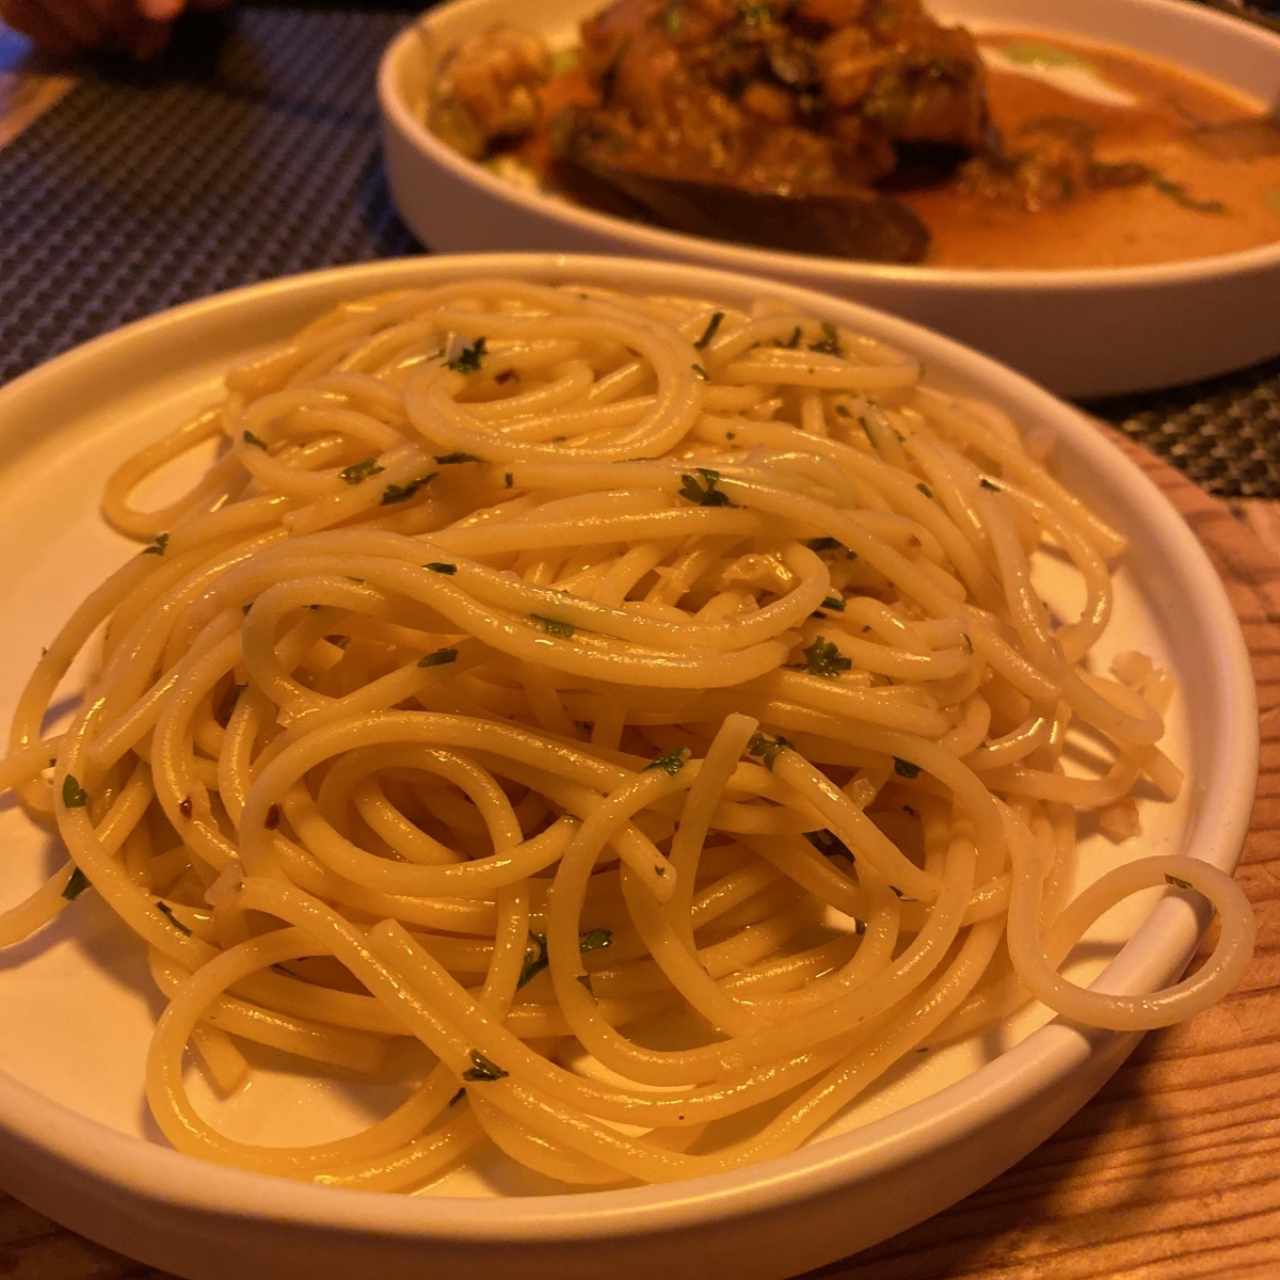 Spaghett añ oleo